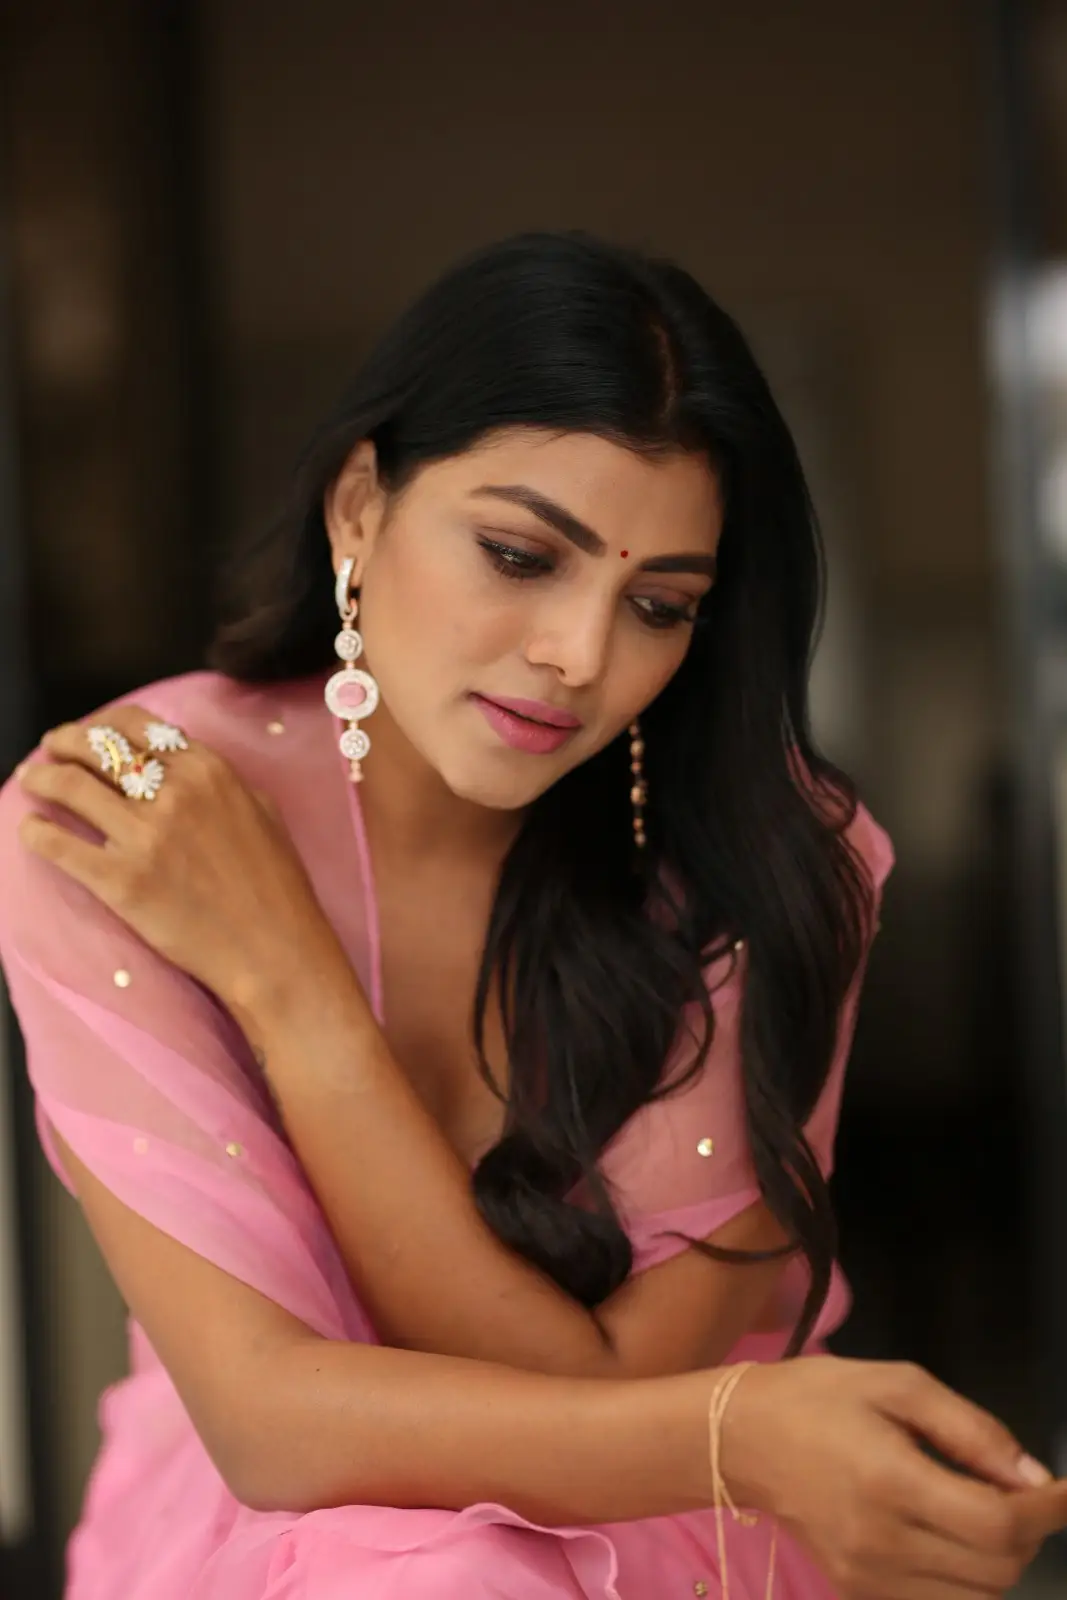 BiggBoss Fame Lahari Shari Stunning looks in Pink Dress 